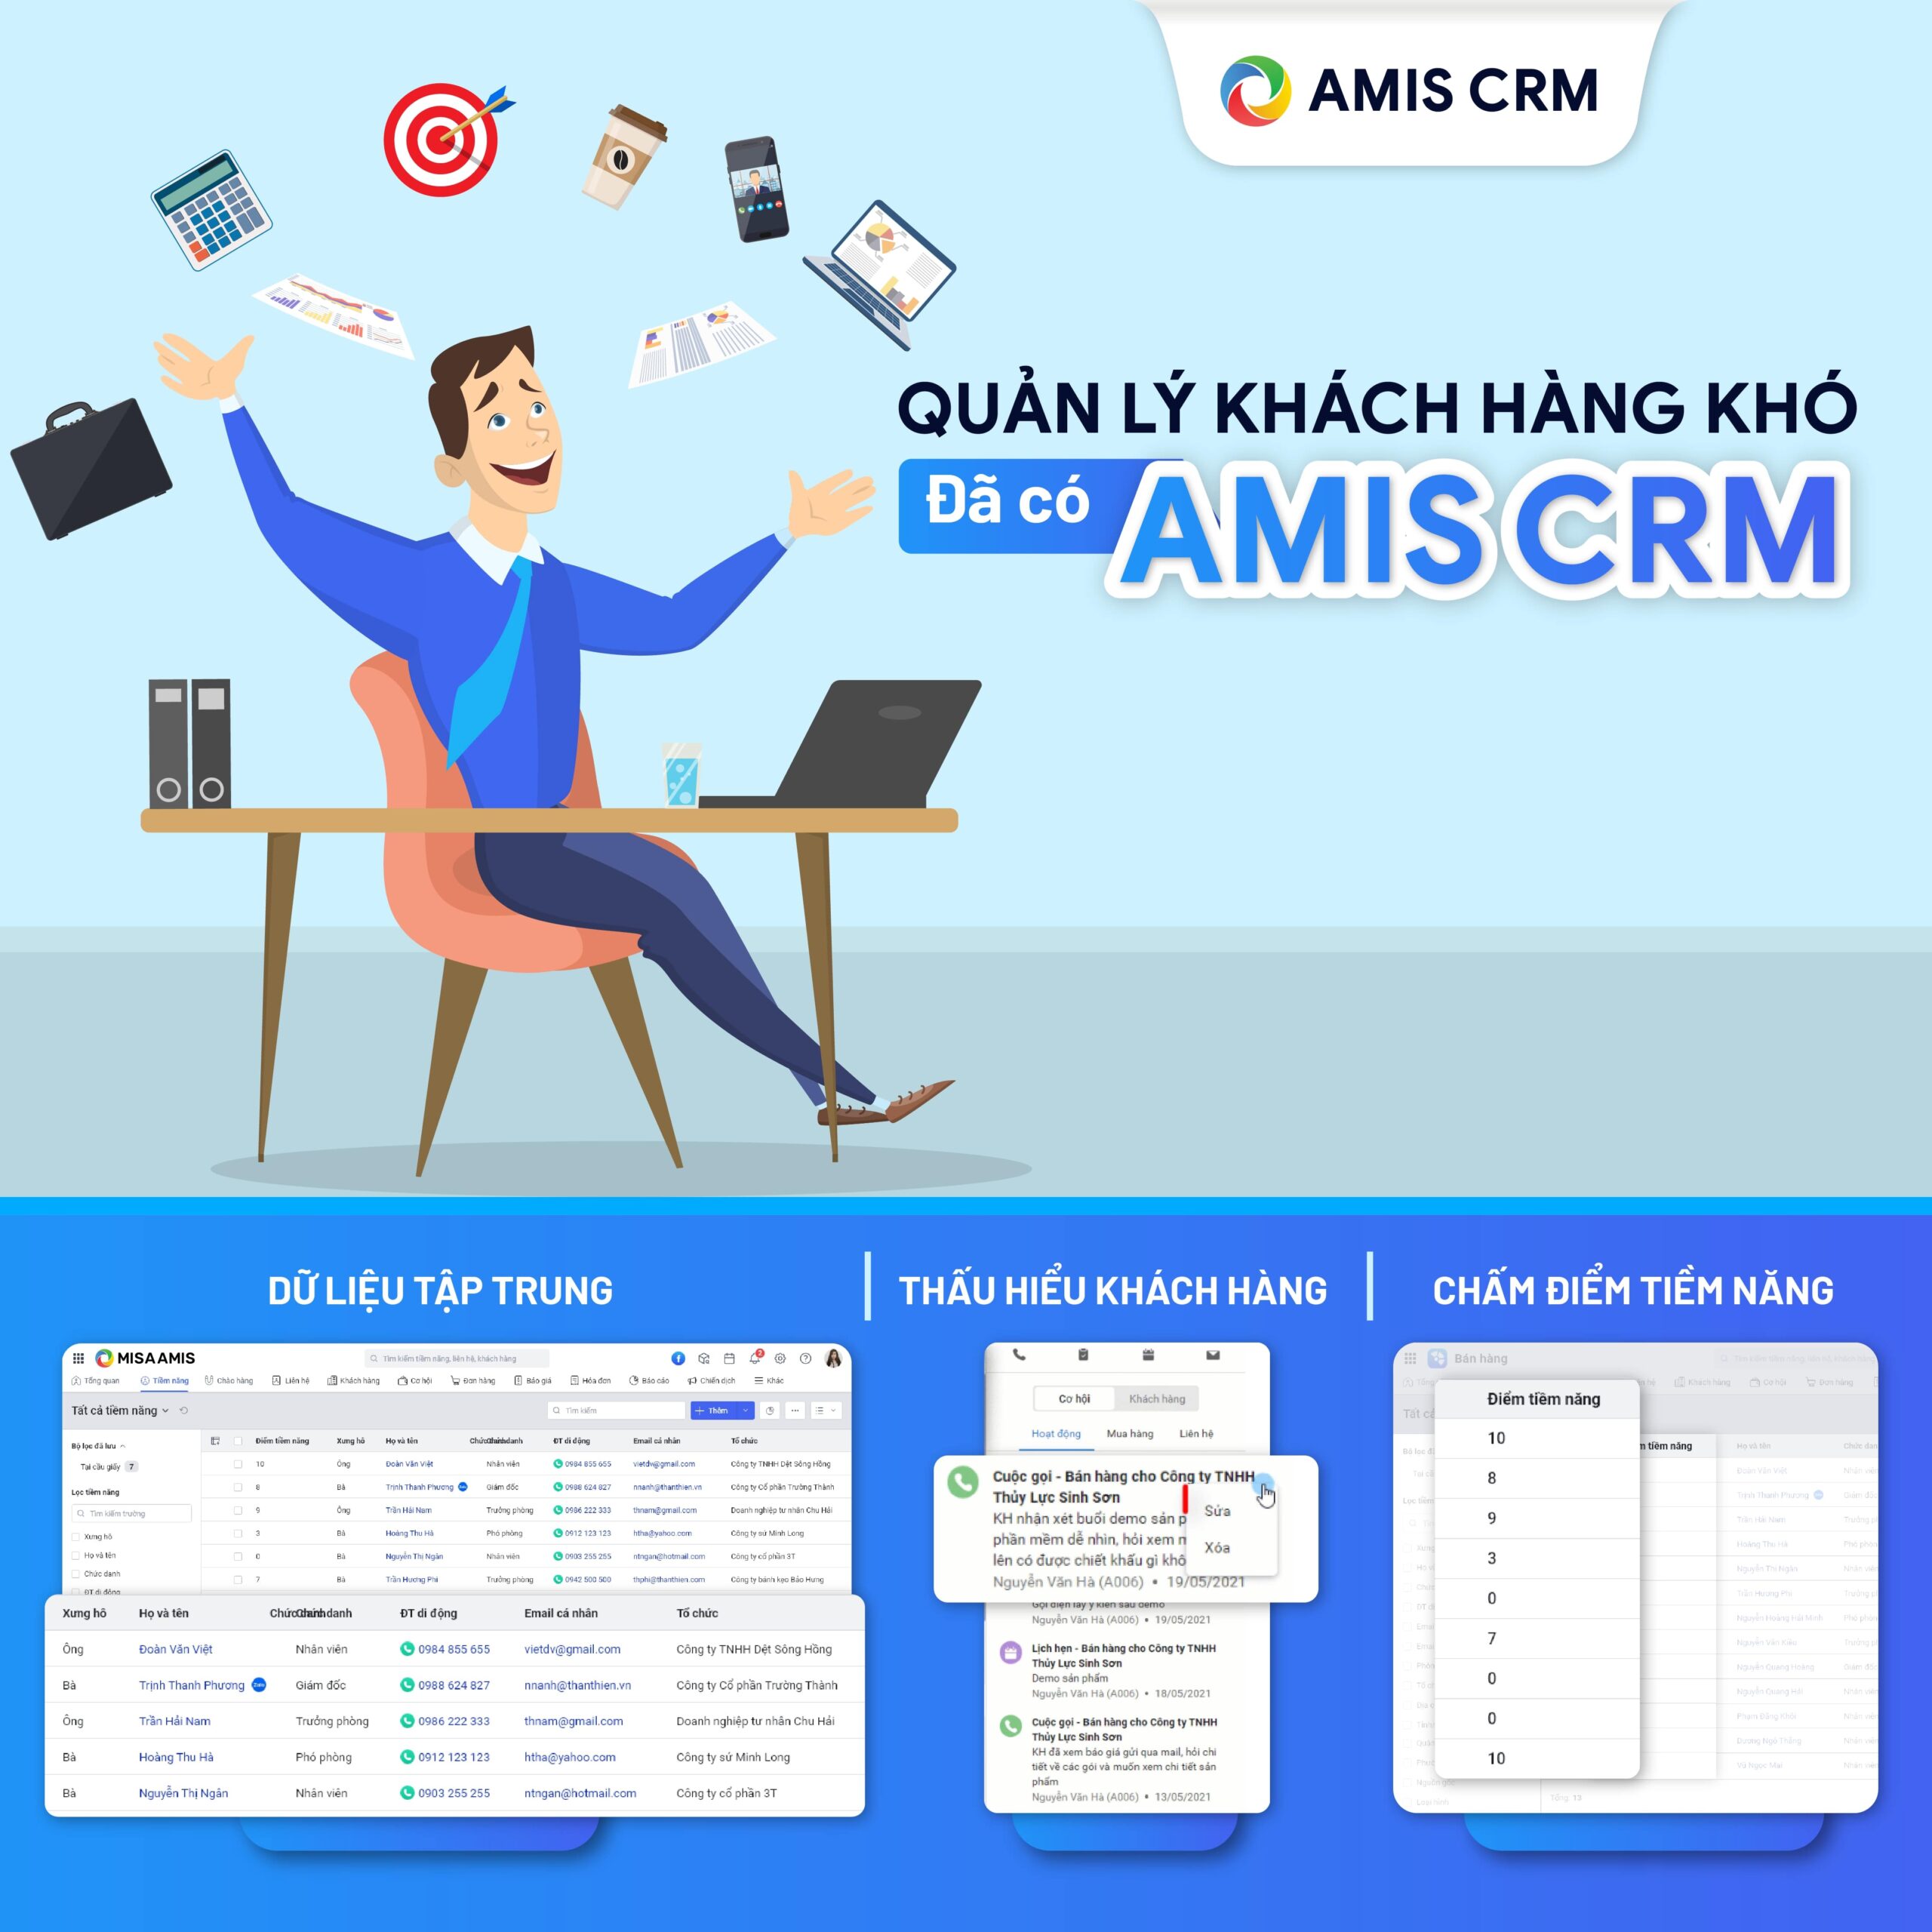 Quản lý khách hàng bằng AMIS CRM